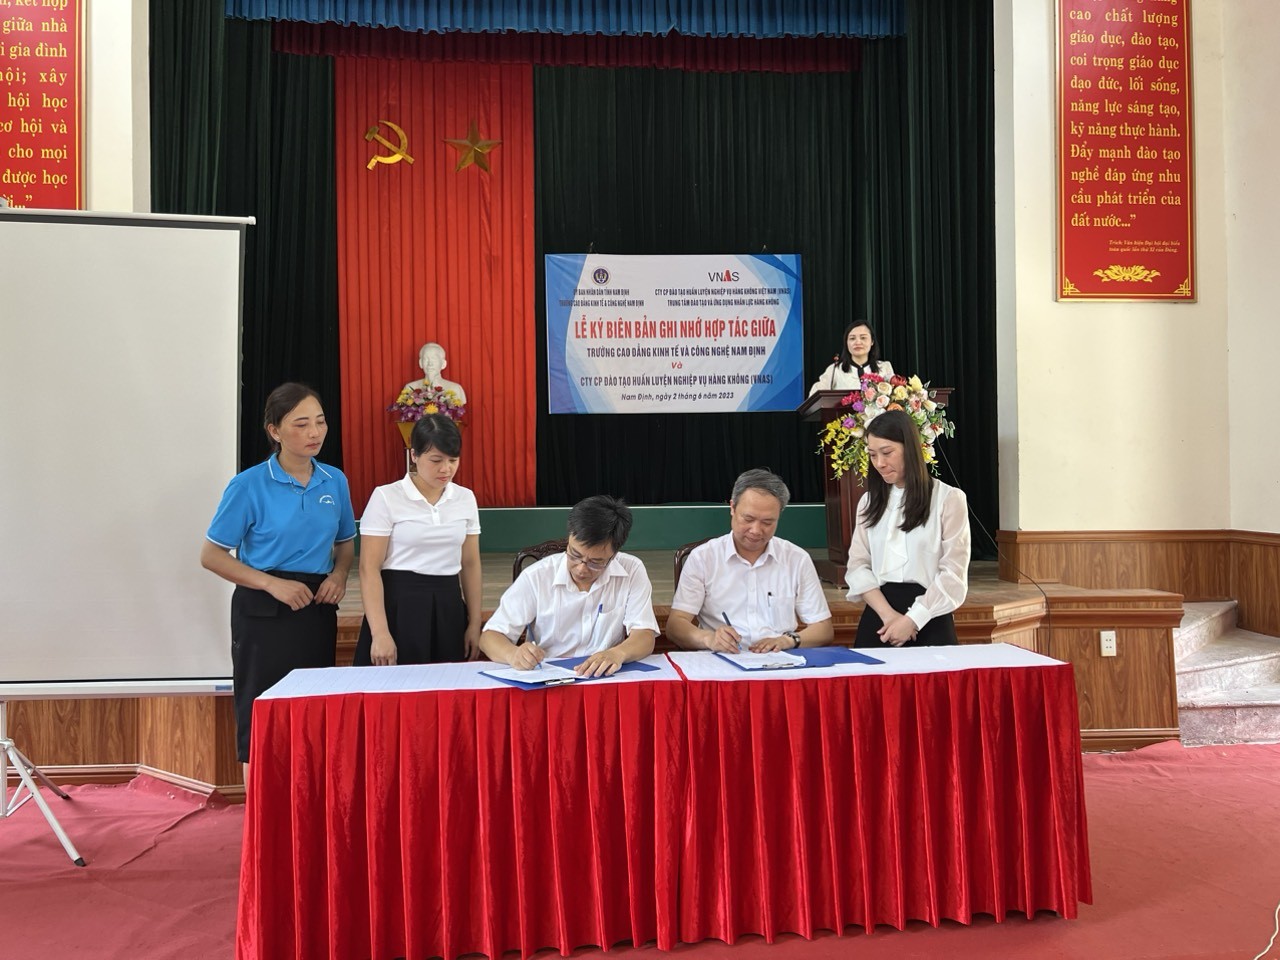 TLễ ký Biên bản ghi nhớ hợp tác giữa ông ty Cổ phần Đào tạo Huấn luyện Nghiệp vụ Hàng không Việt Nam và Trường Cao đẳng Kinh tế và Công nghệ Nam Định